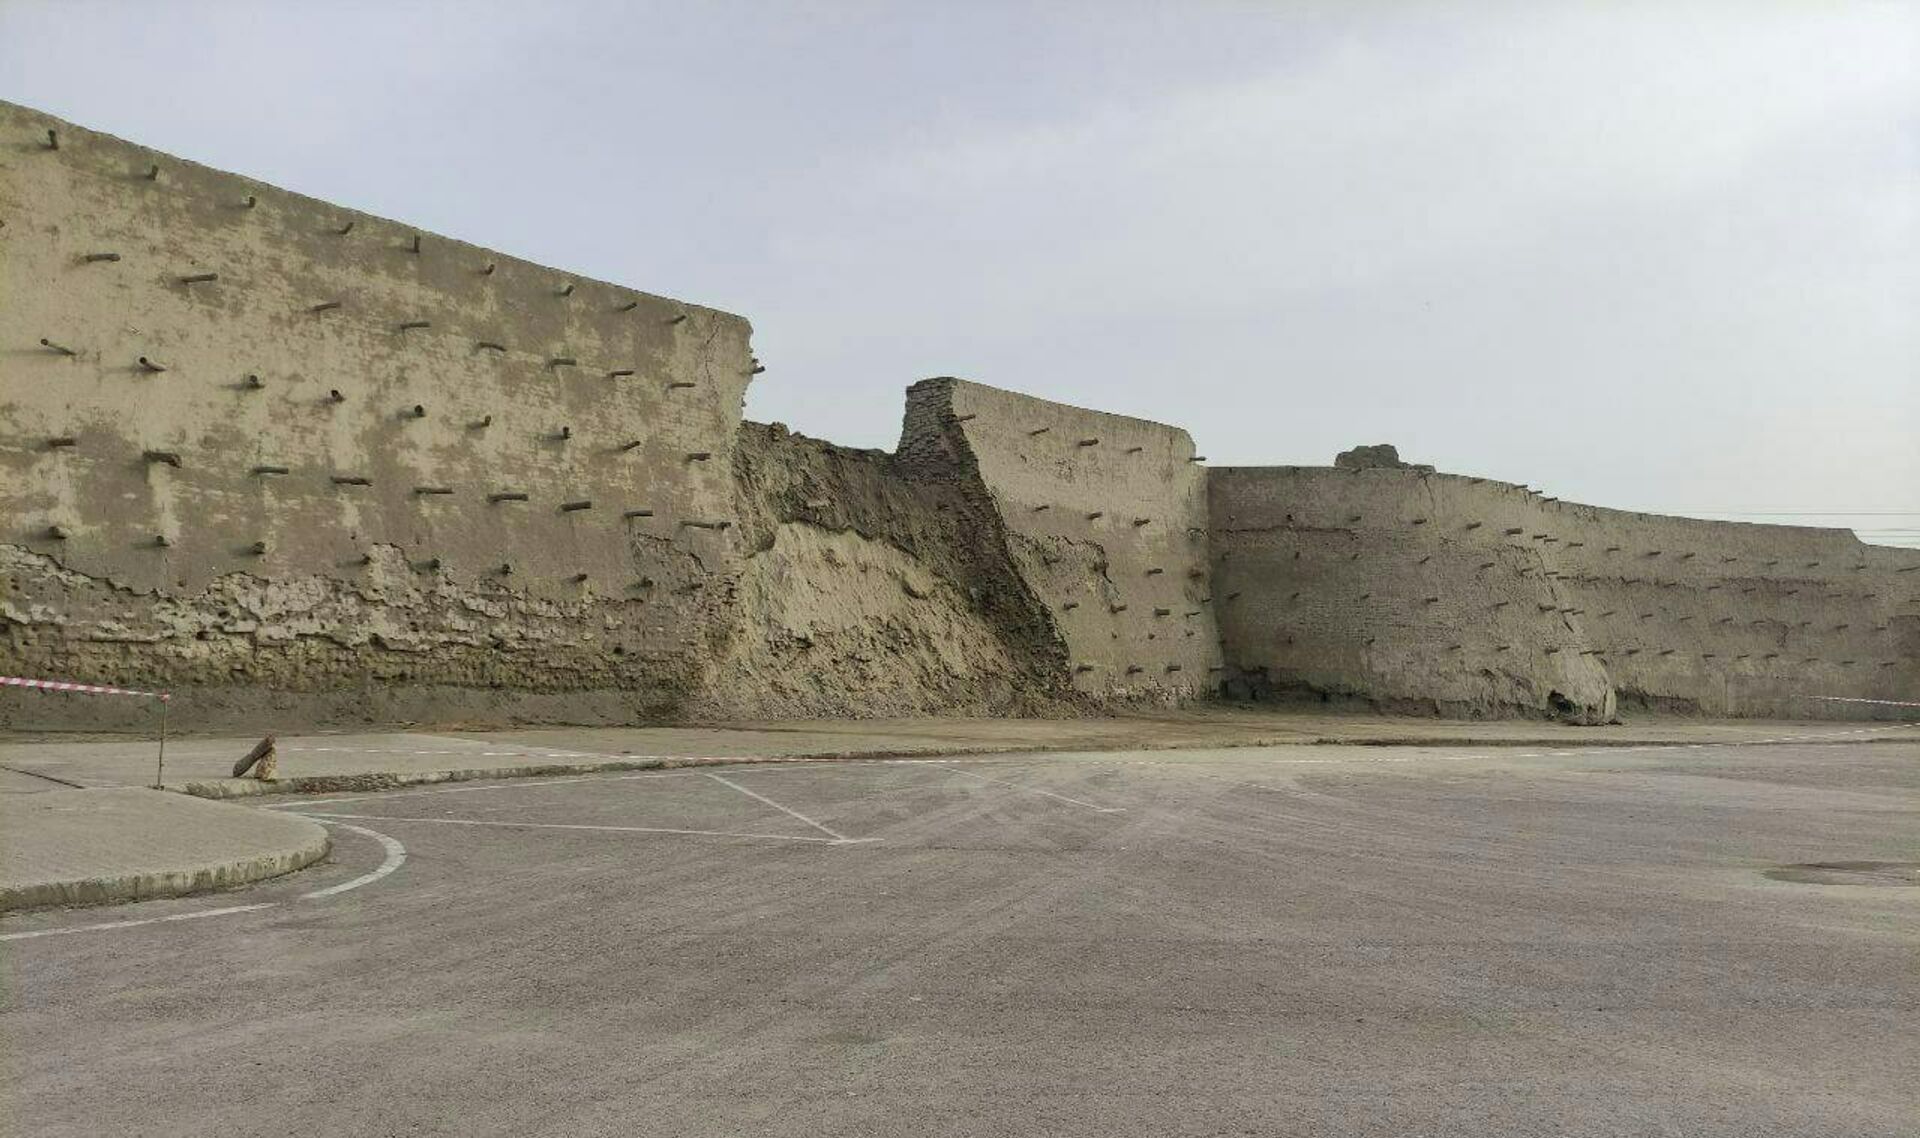 Обвалилась крепостная стена возле Ворот Талипоч - Sputnik Узбекистан, 1920, 14.03.2022